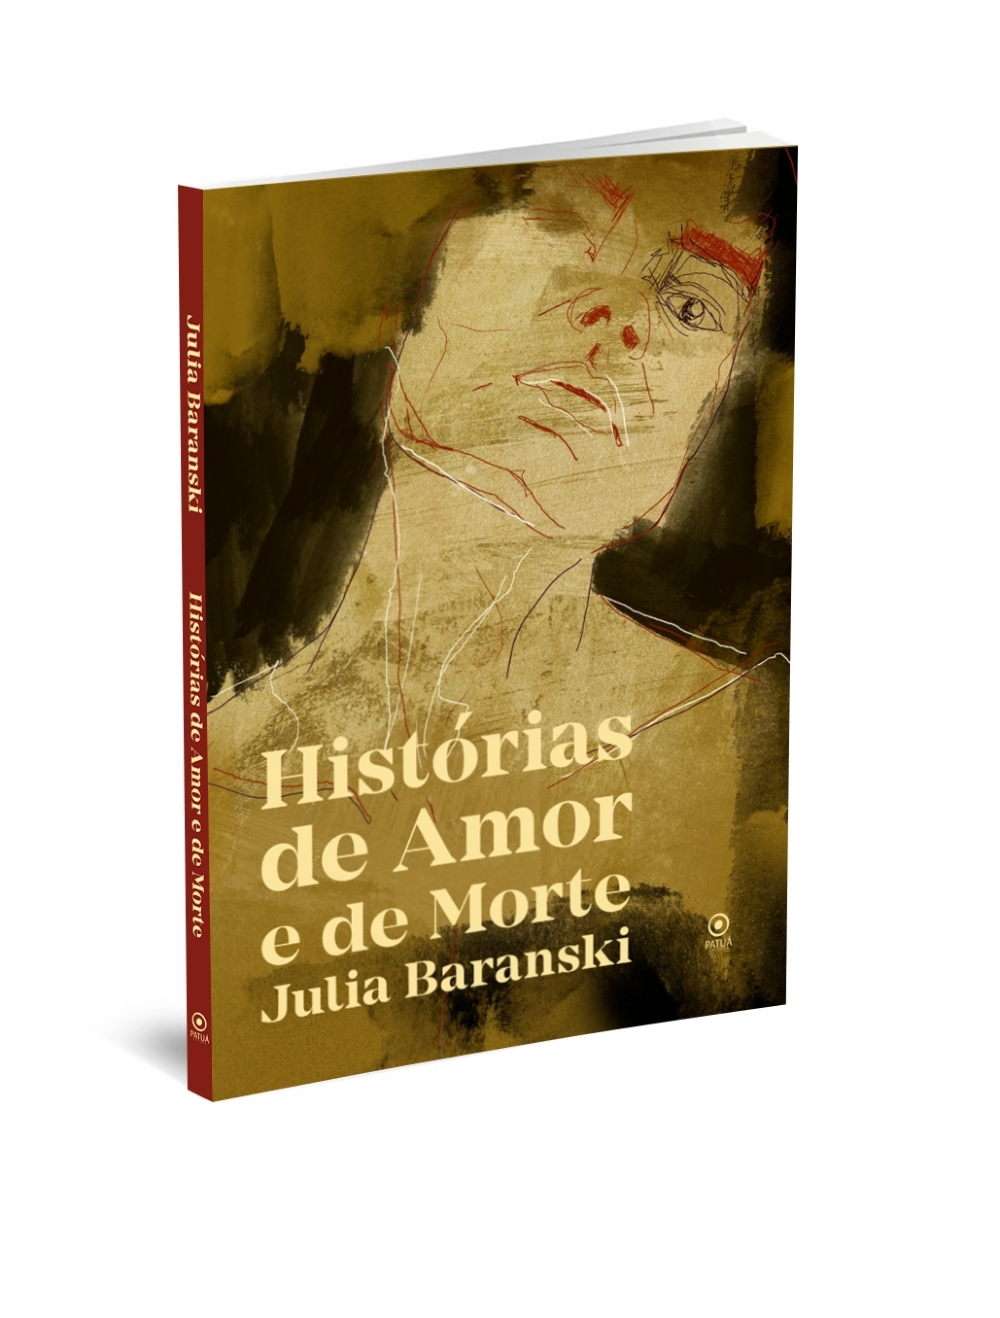 Julia Baranski - Livro de narrativas 'Histórias de amor e de morte' faz da escrita um lugar de exercitar identidades e pertencimentos | Fernando Andrade